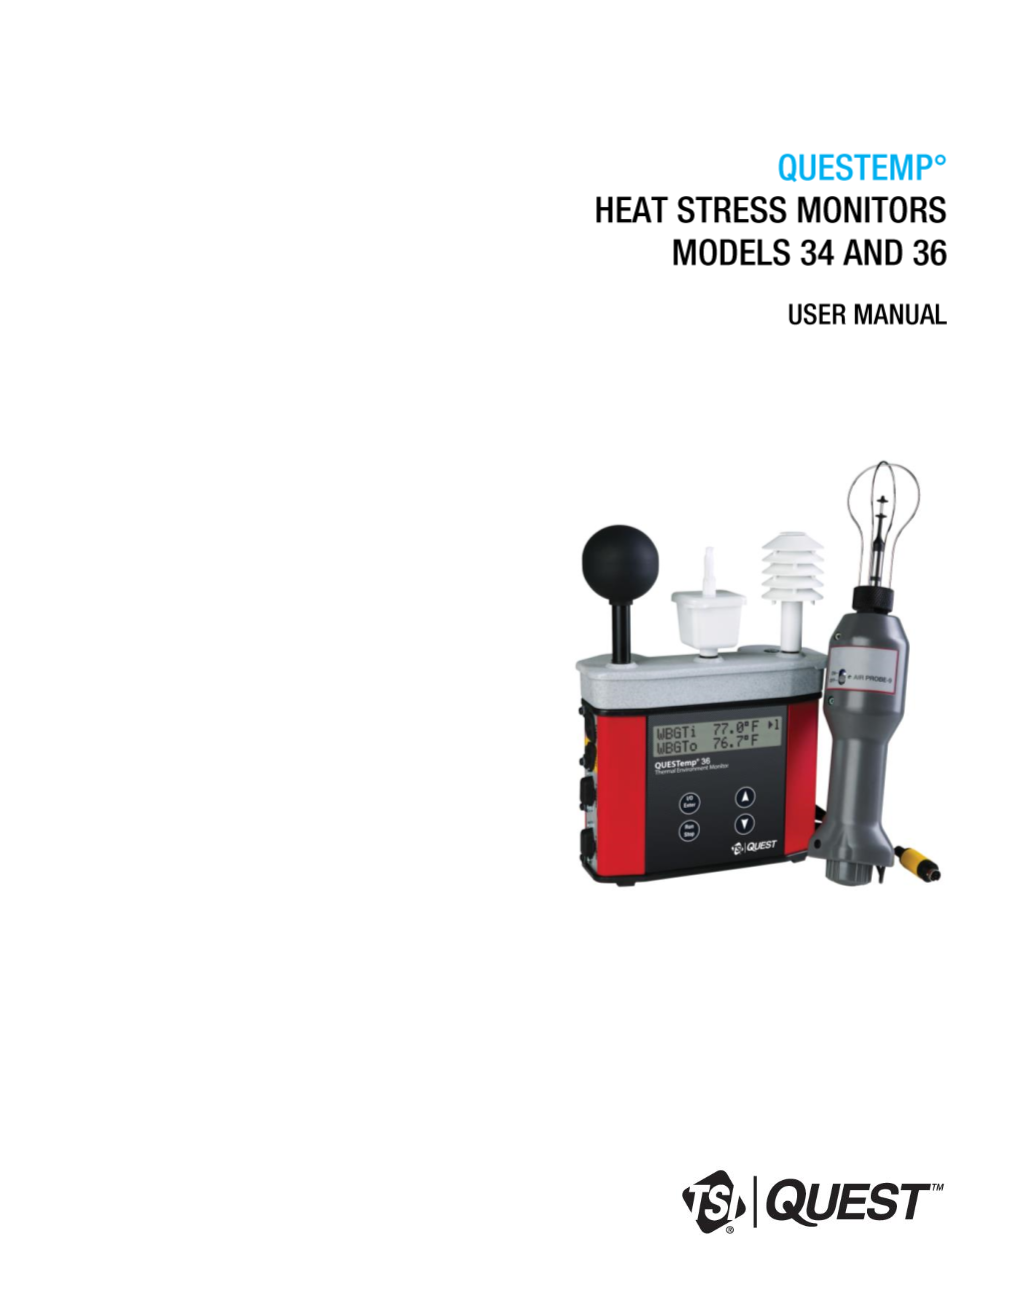 Questemp Heat Stress Monitors Models 34 and 36 User Manual